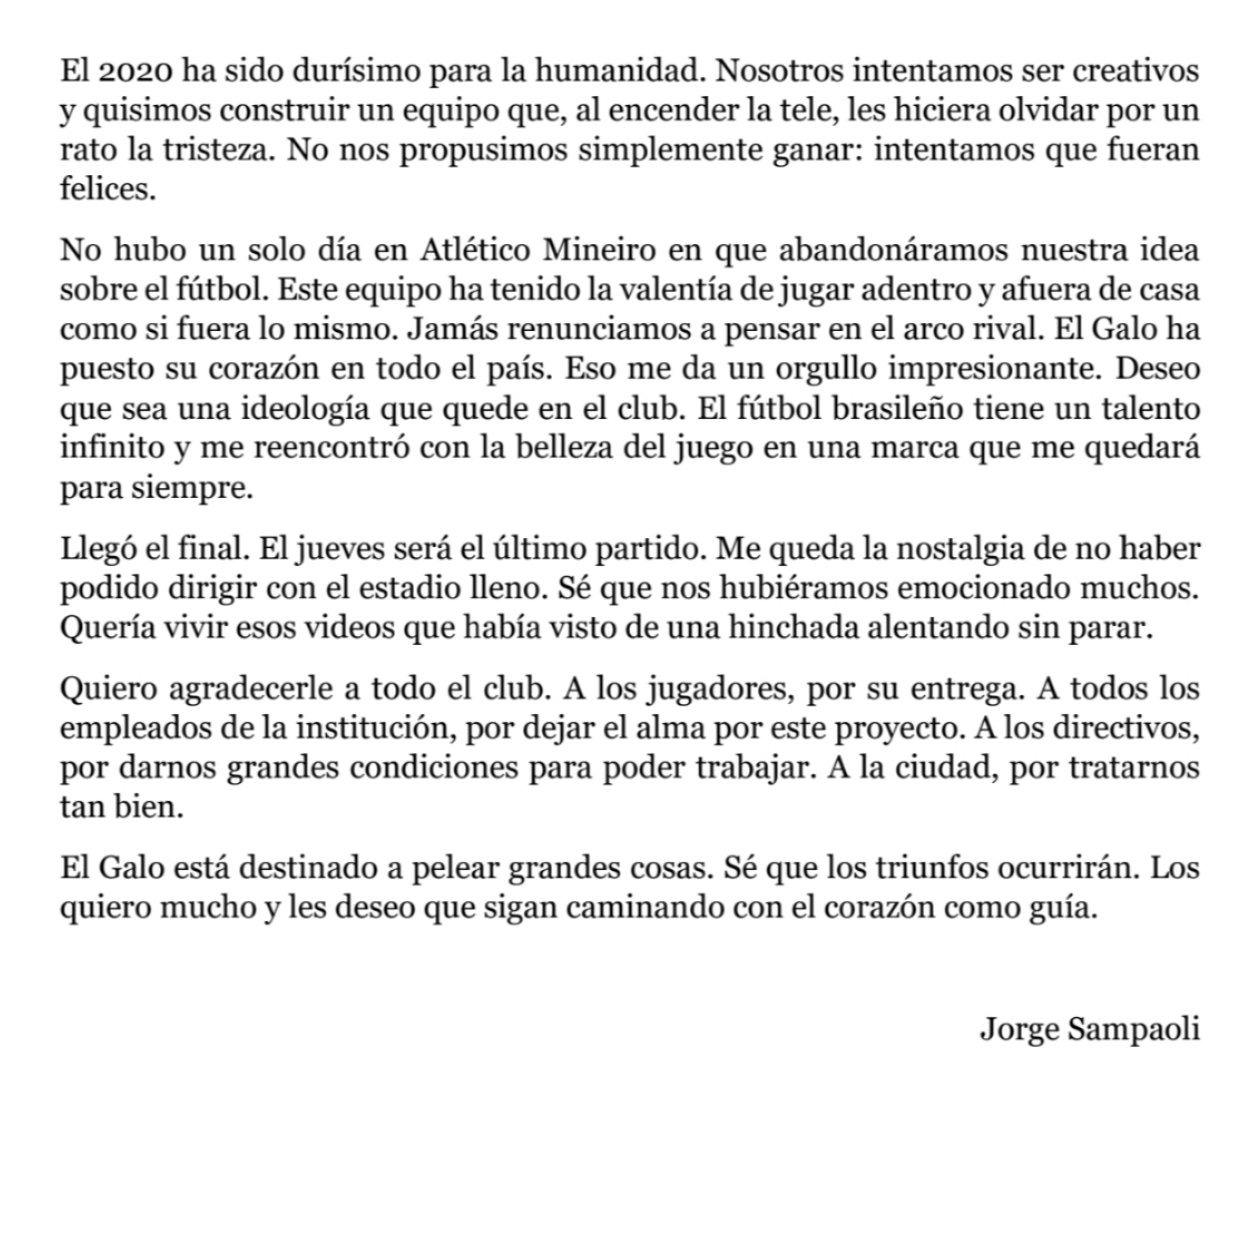 Aquí la carta de Jorge Sampaoli.